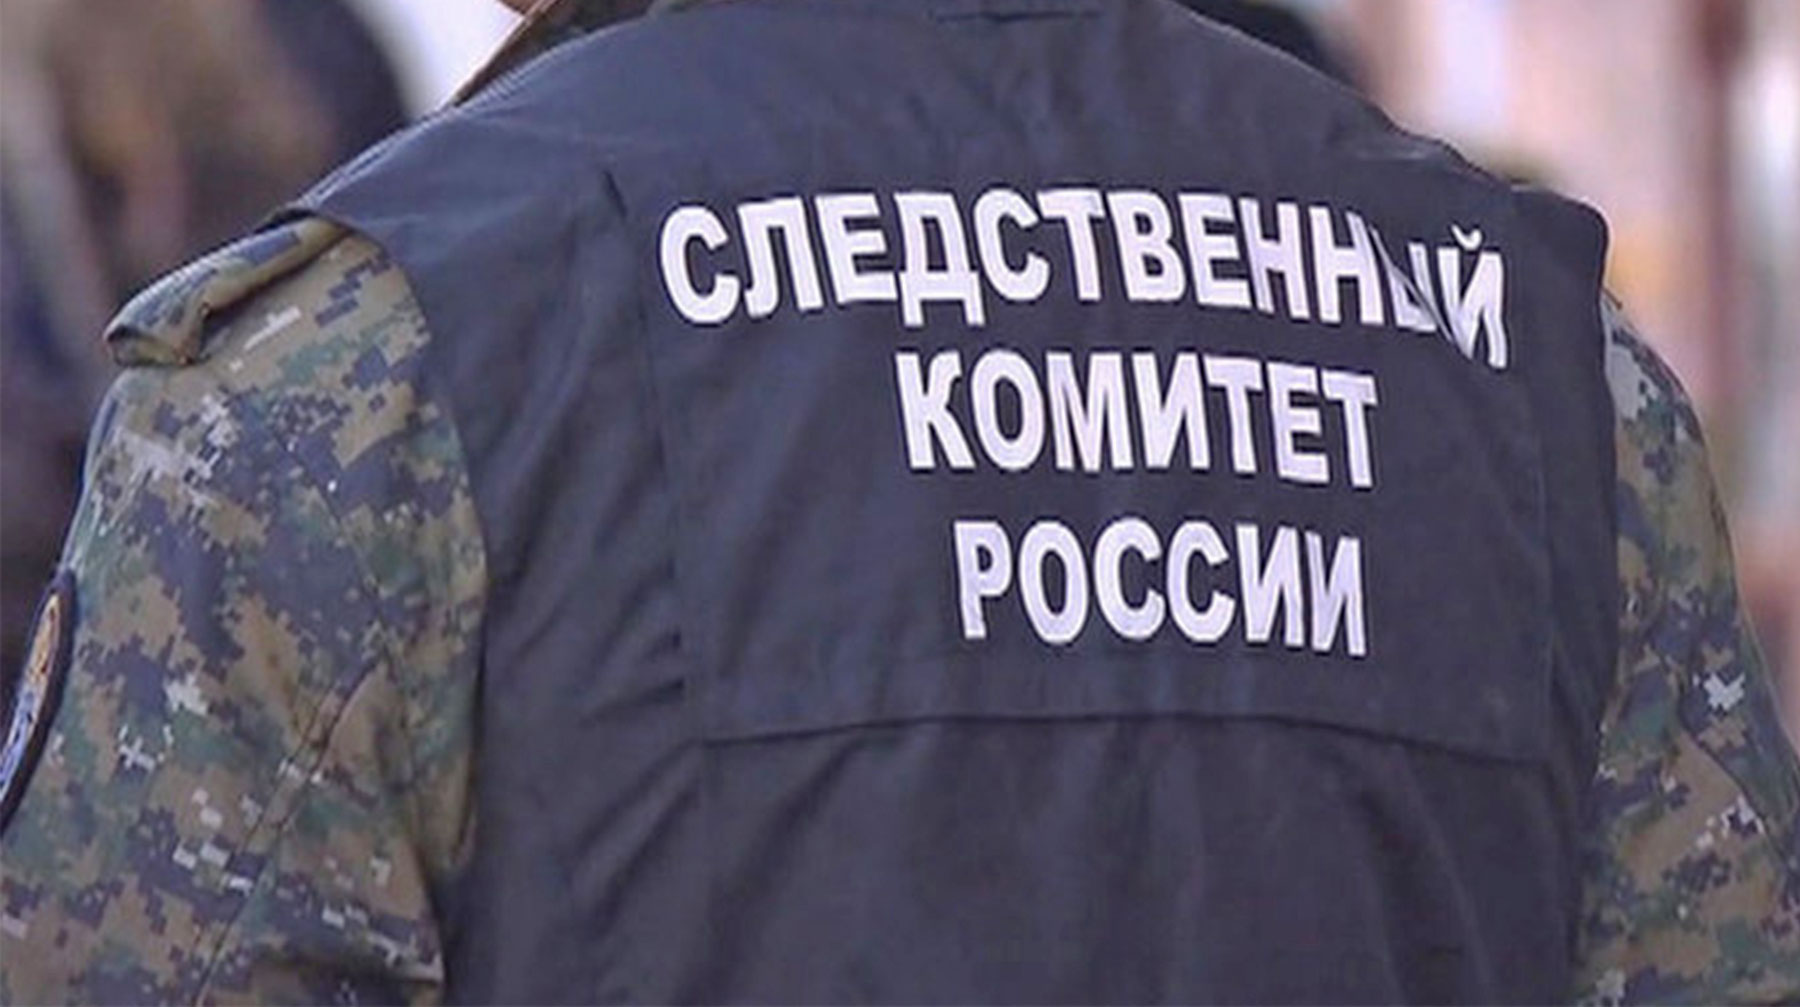 У троих подозреваемых нашли гранату, самодельные взрывные устройства и пистолет Макарова undefined